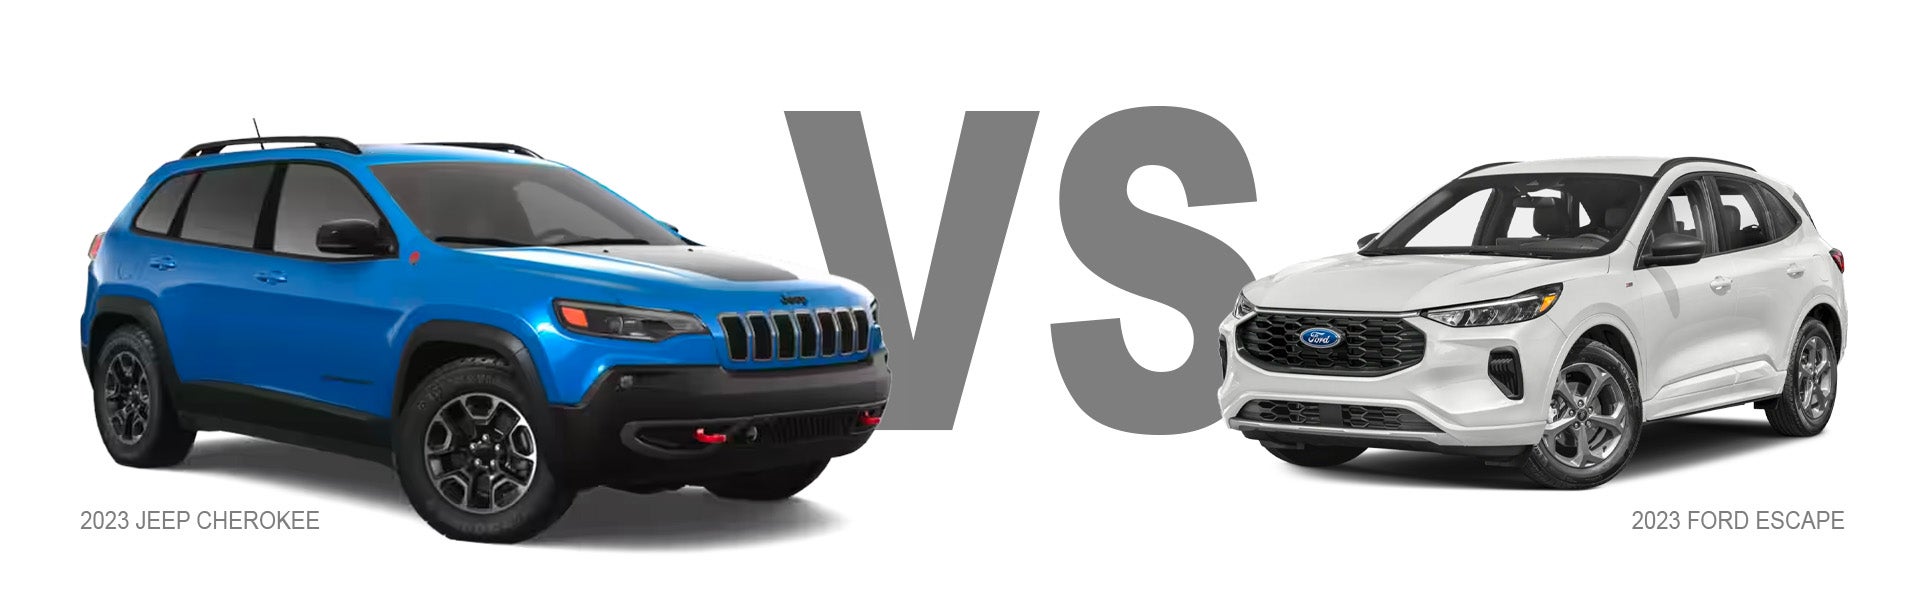 Jeep Compass vs Ford Escape Compact CUV Comparison